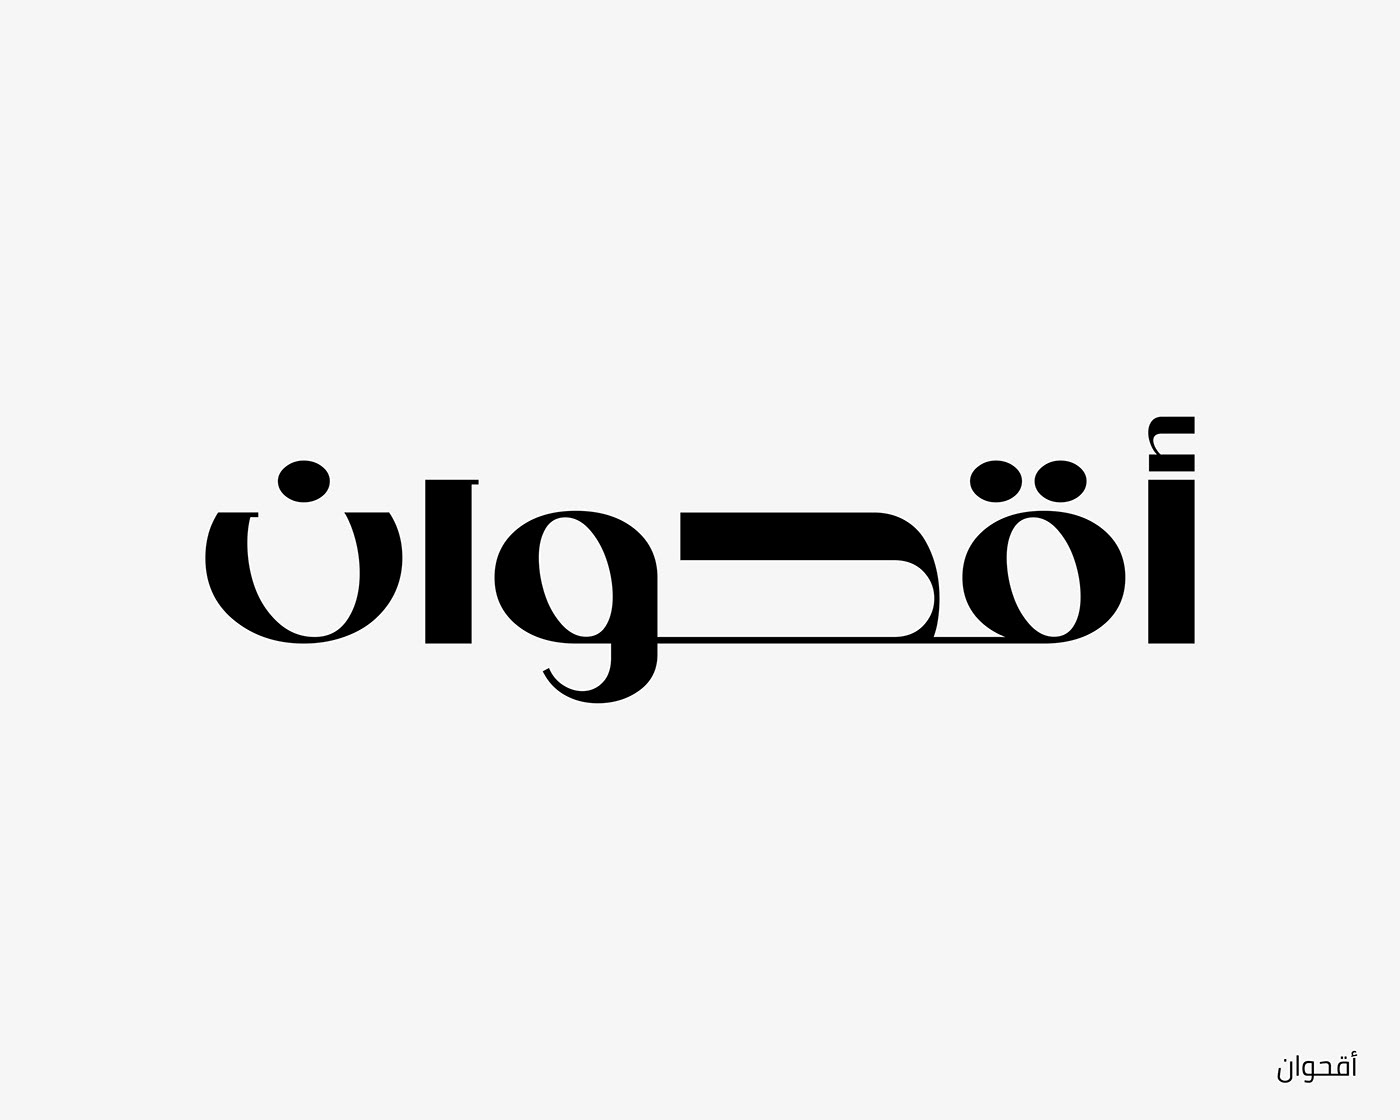 arabic type arabic typography font hibrayer lettering type Type experiment typo typography   حبراير